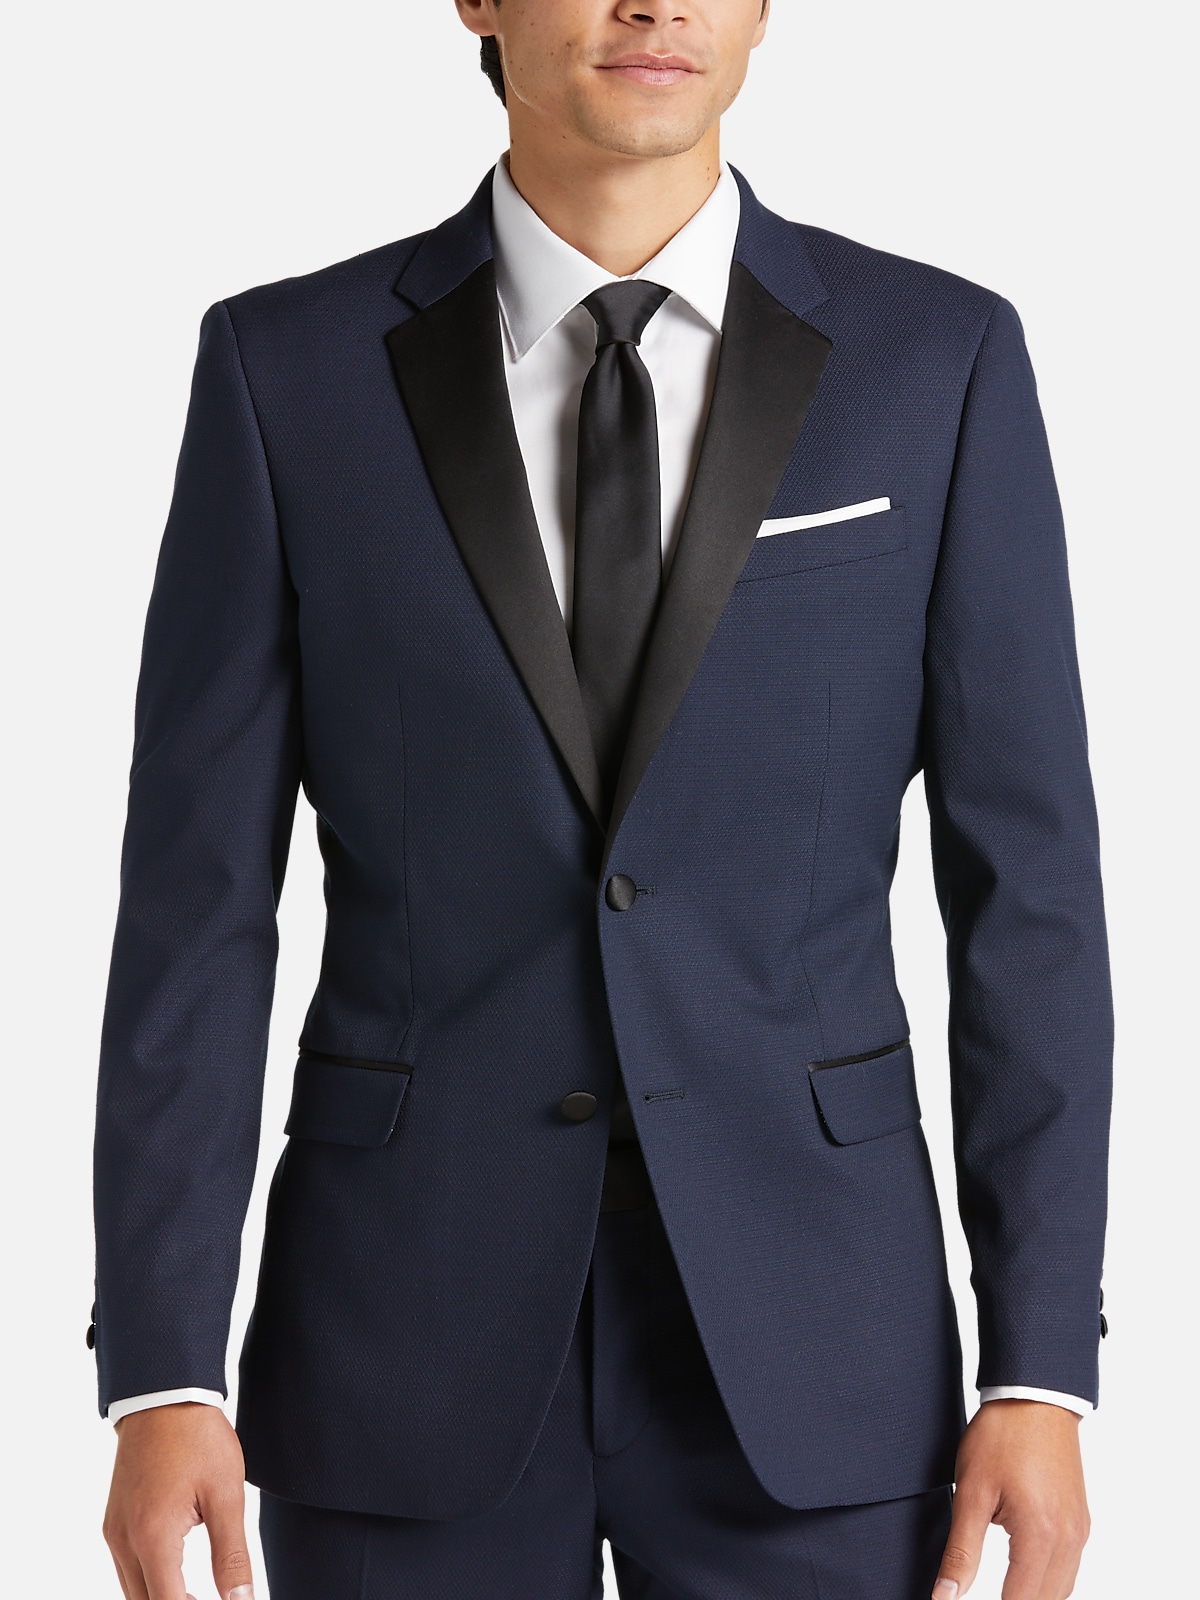 Egara Skinny Fit Suit Separates Dinner Jacket | All Sale| Men's Wearhouse